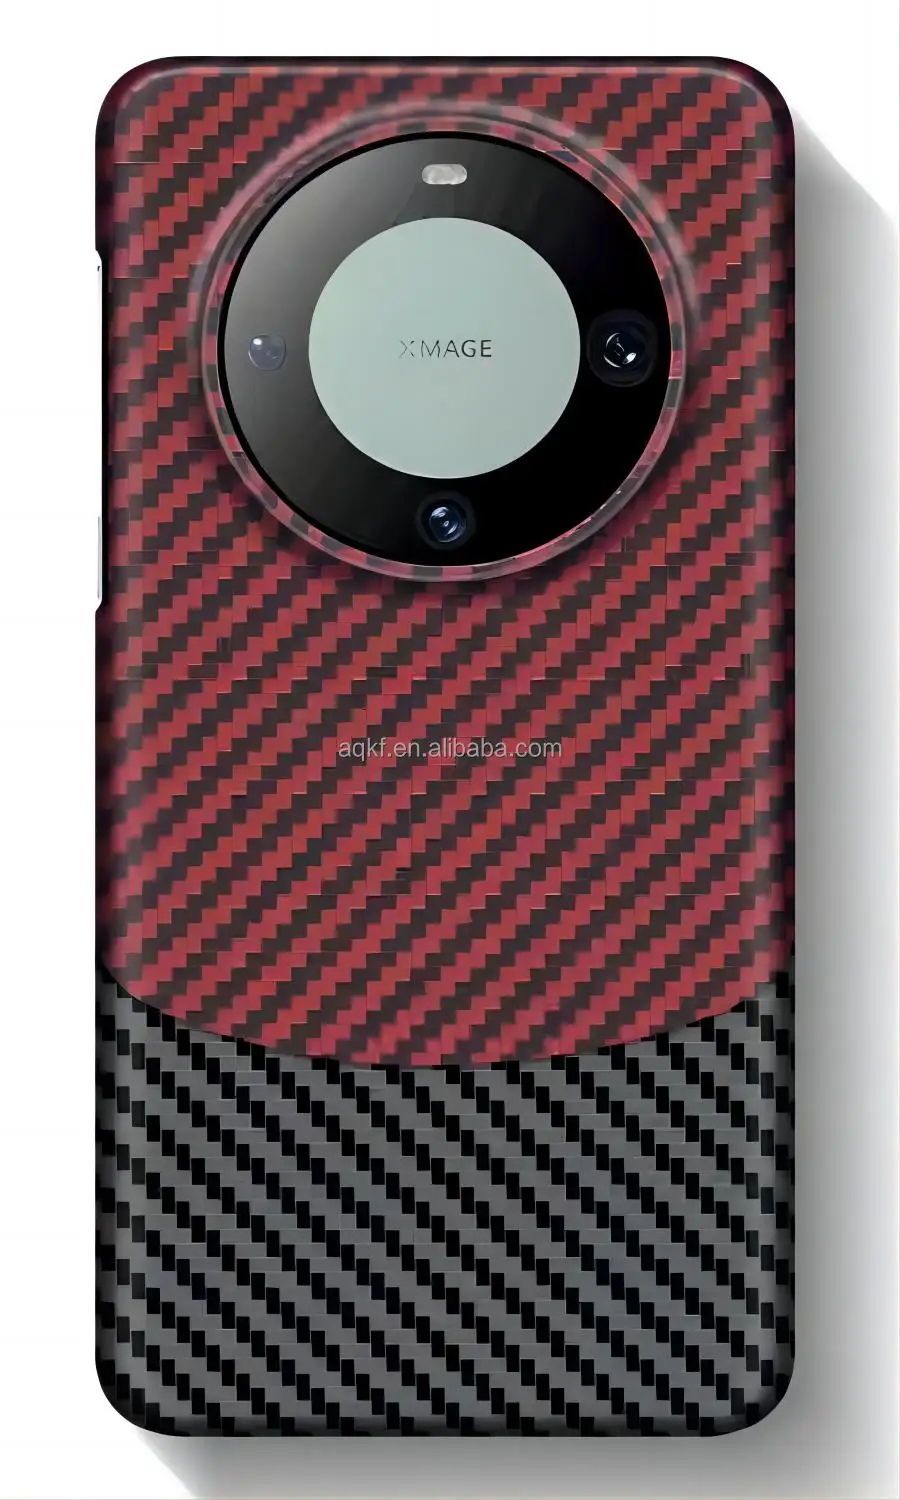 כיסוי טלפון ארידי אריג אדום ושחור 1500D230G